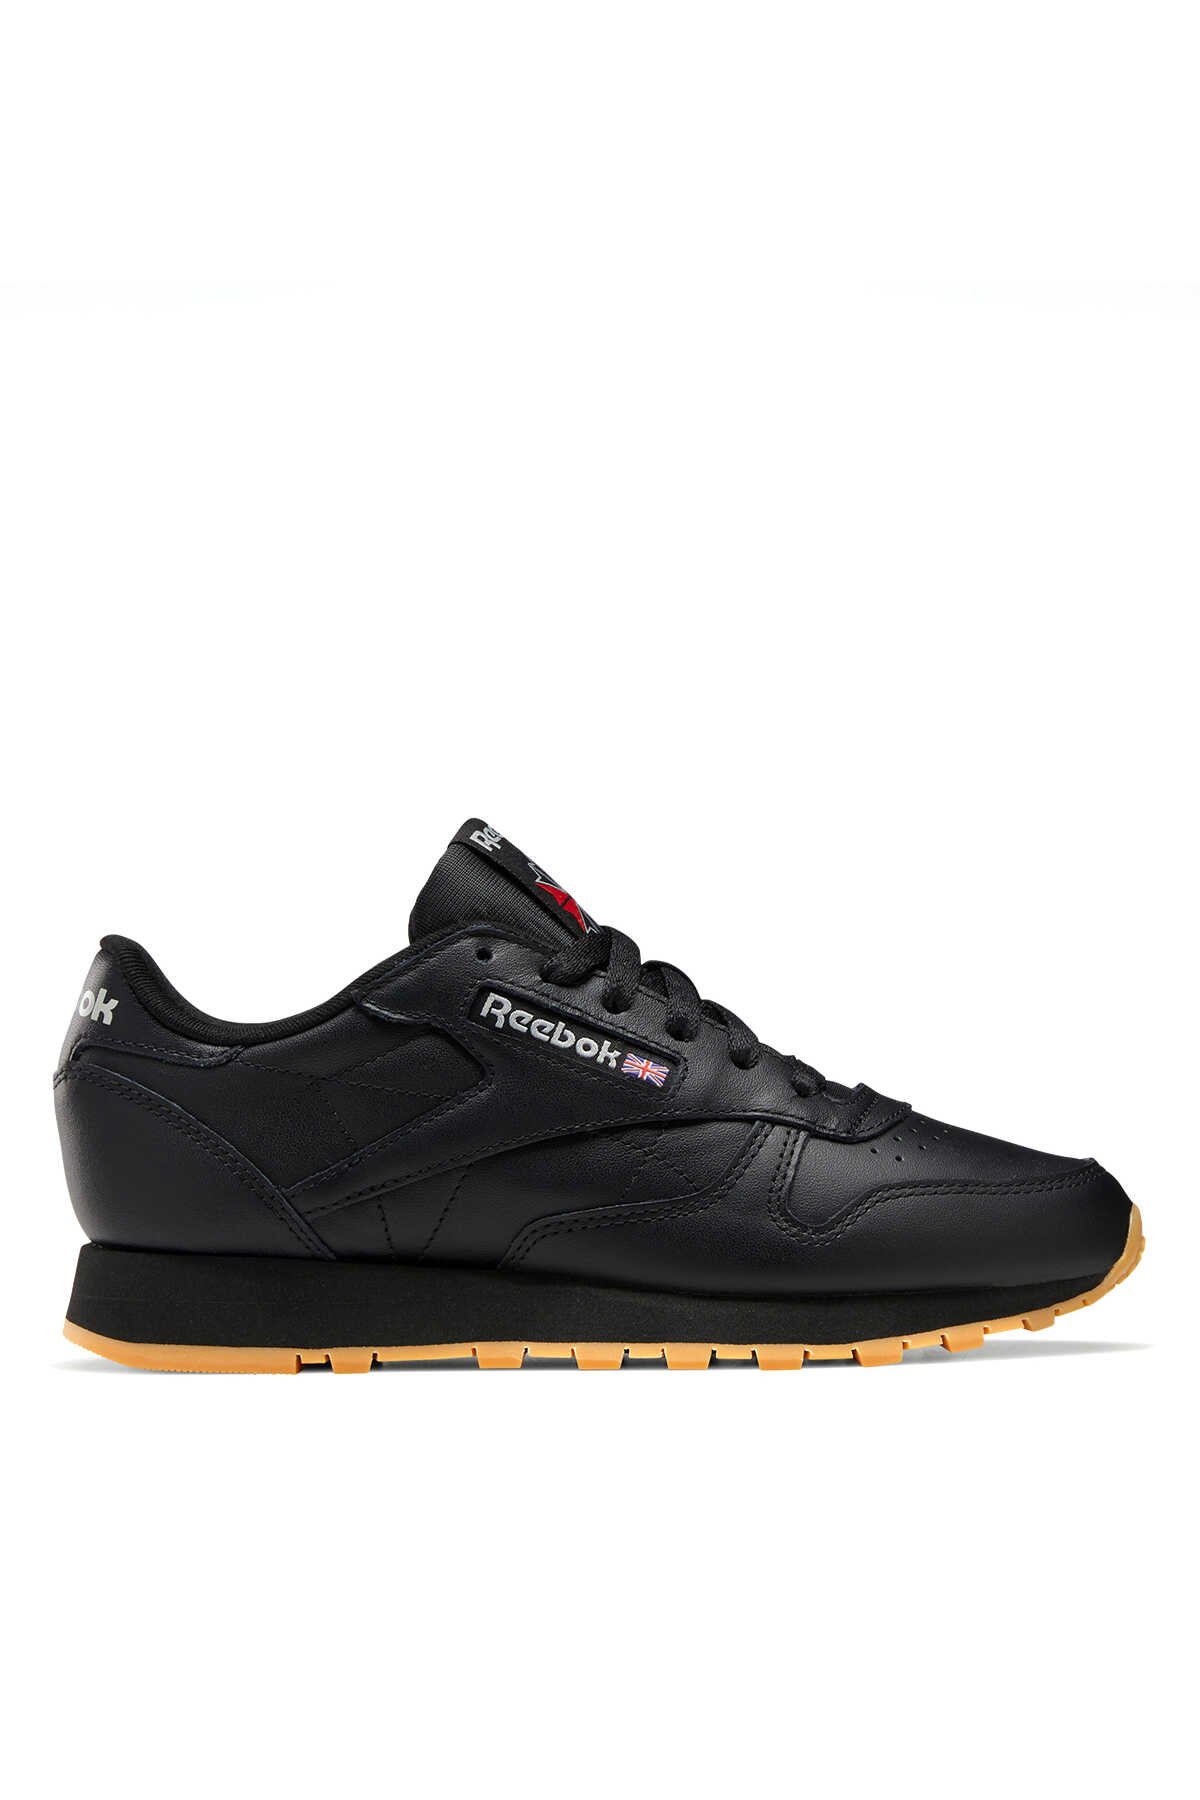 Reebok - Reebok CLASSIC LEATHER Kadın Sneaker Ayakkabı Siyah_0